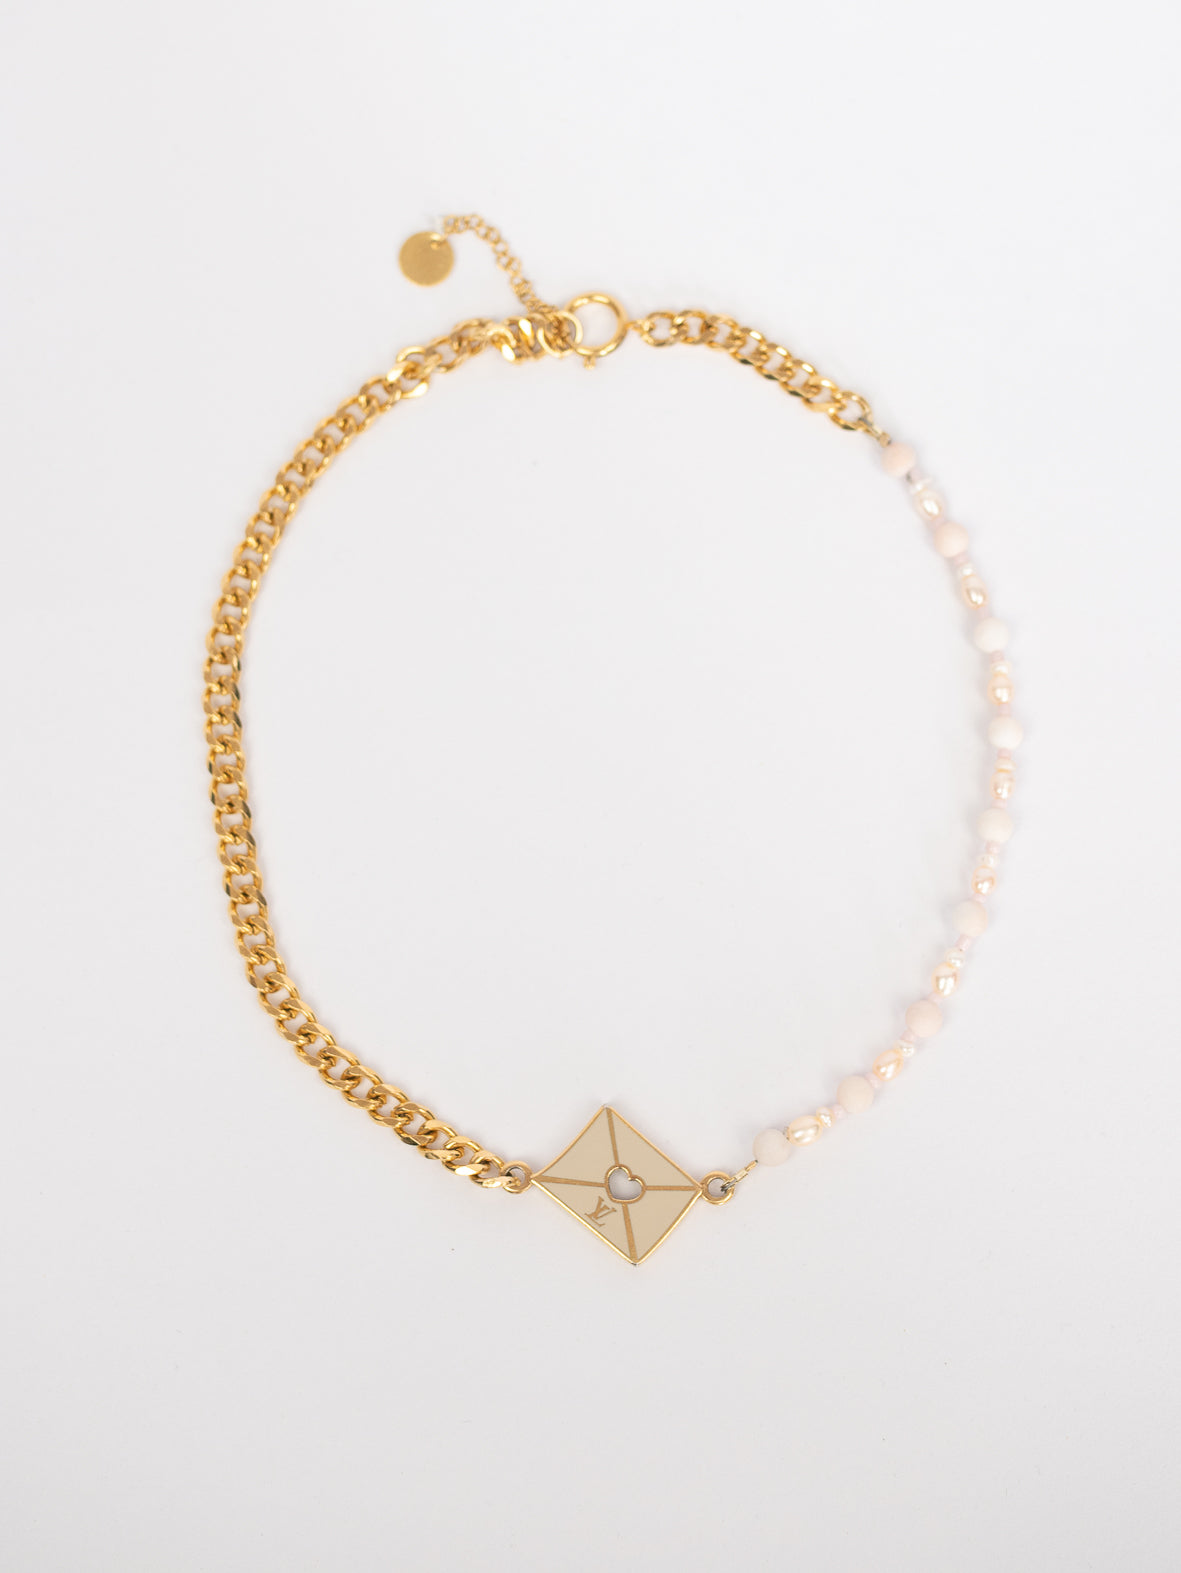 Reworked Louis Vuitton Designer Golden Glam Necklace